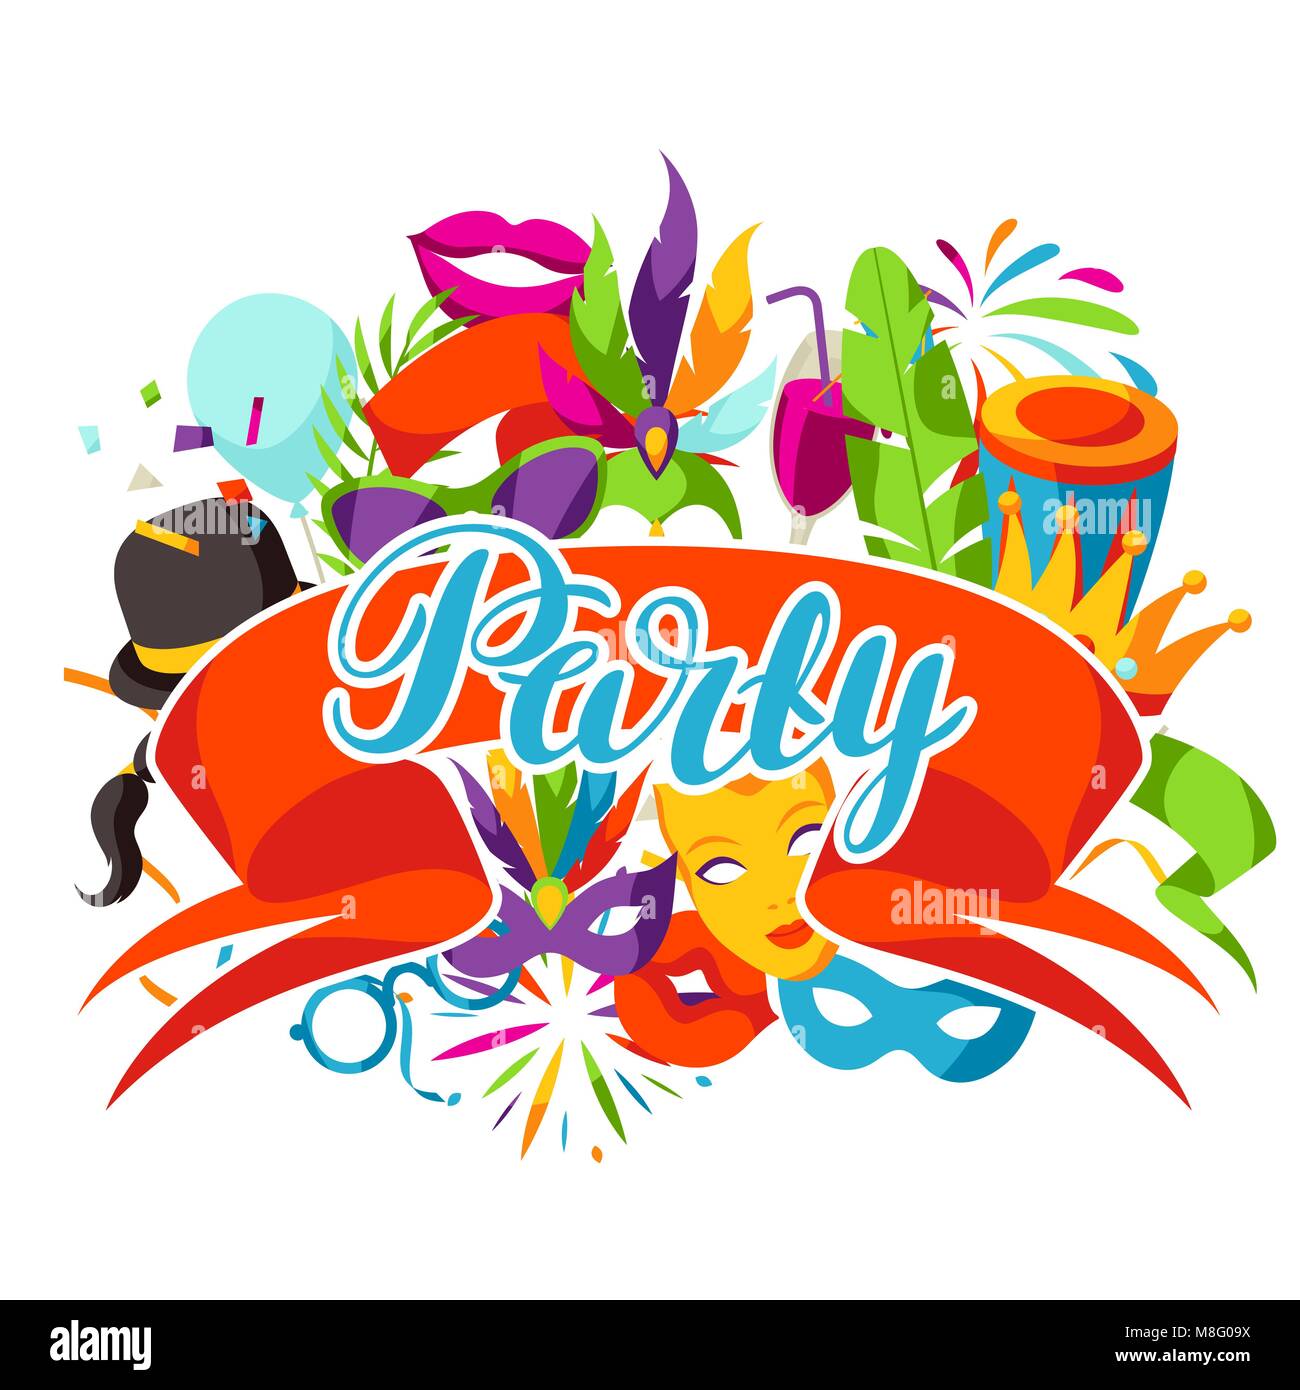 Karneval Party Hintergrund mit Feier Symbole, Objekte und Einrichtung Stock Vektor